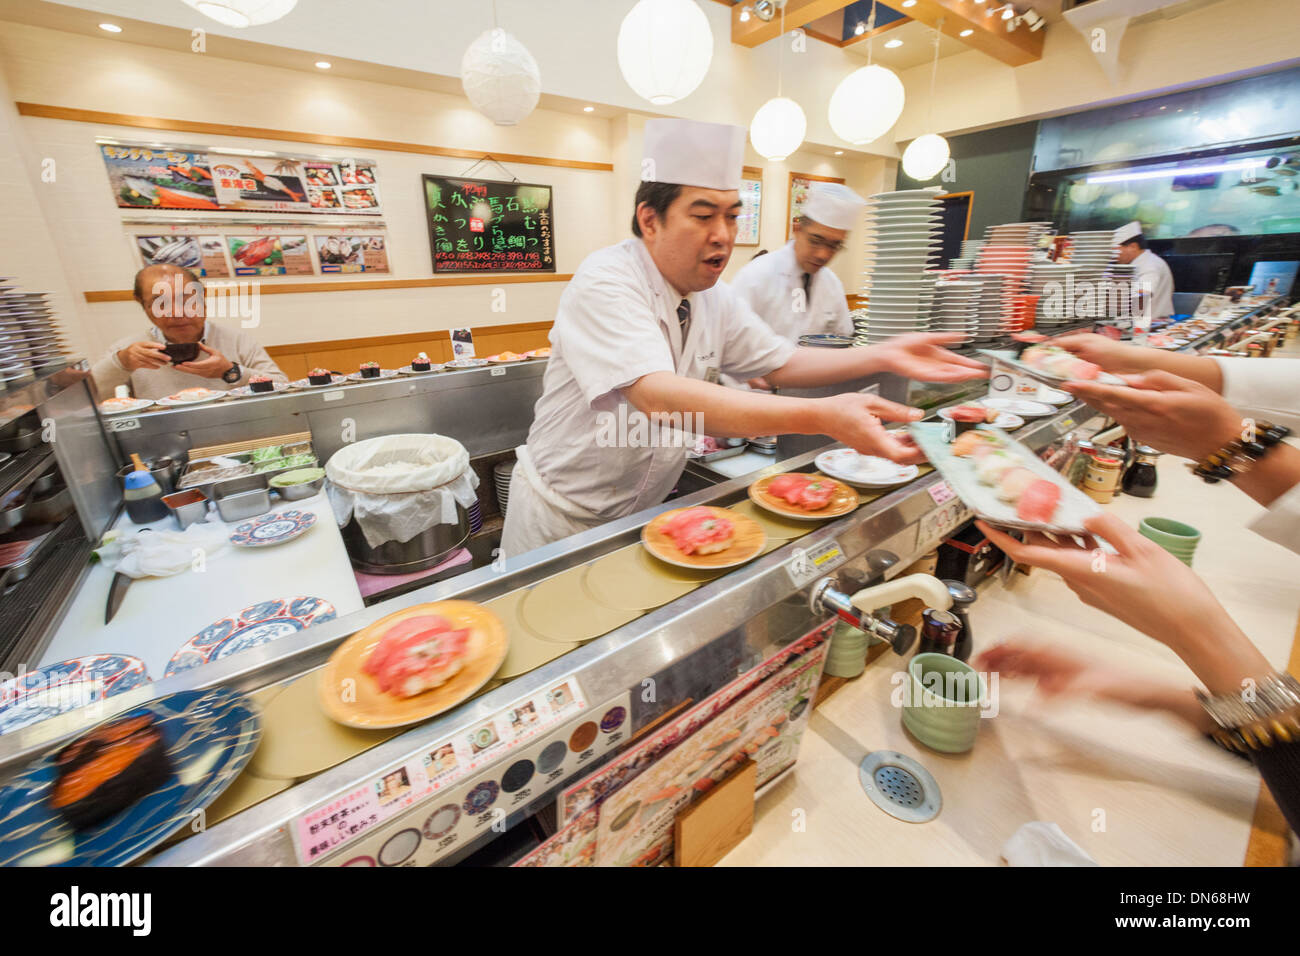 https://c8.alamy.com/comp/DN68HW/japan-honshu-kanto-tokyo-moving-sushi-restaurant-DN68HW.jpg